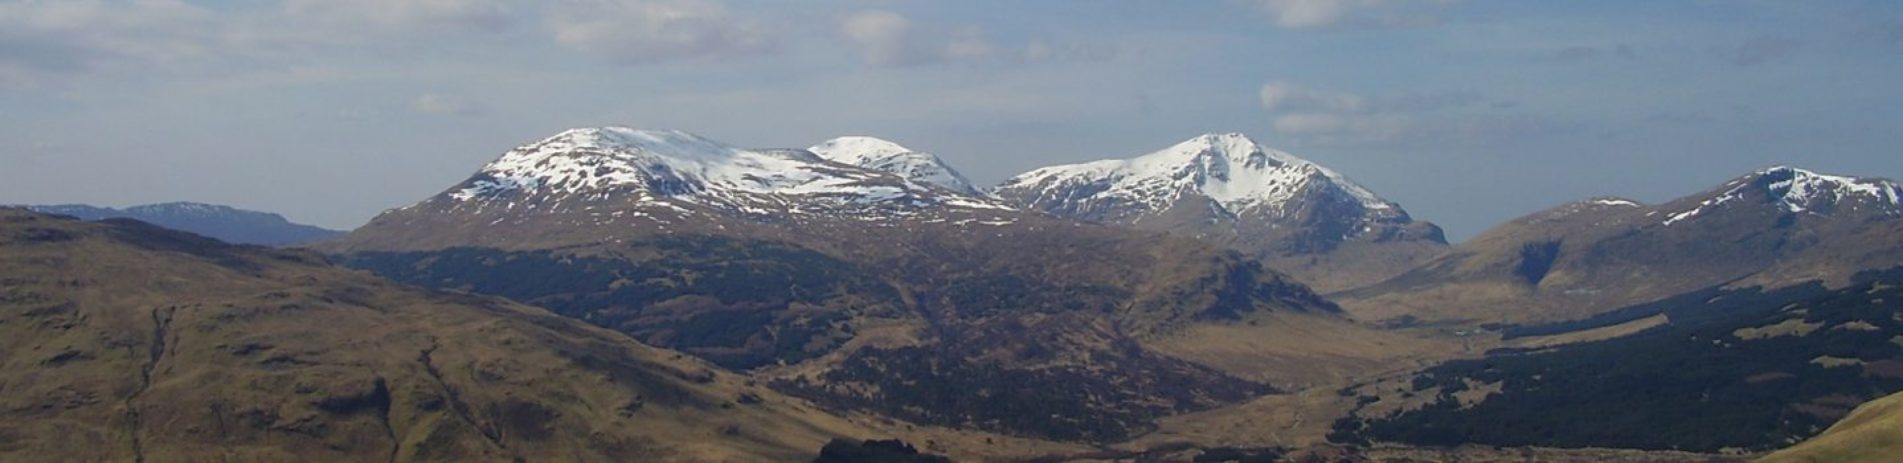 snowy-mountain-panorama